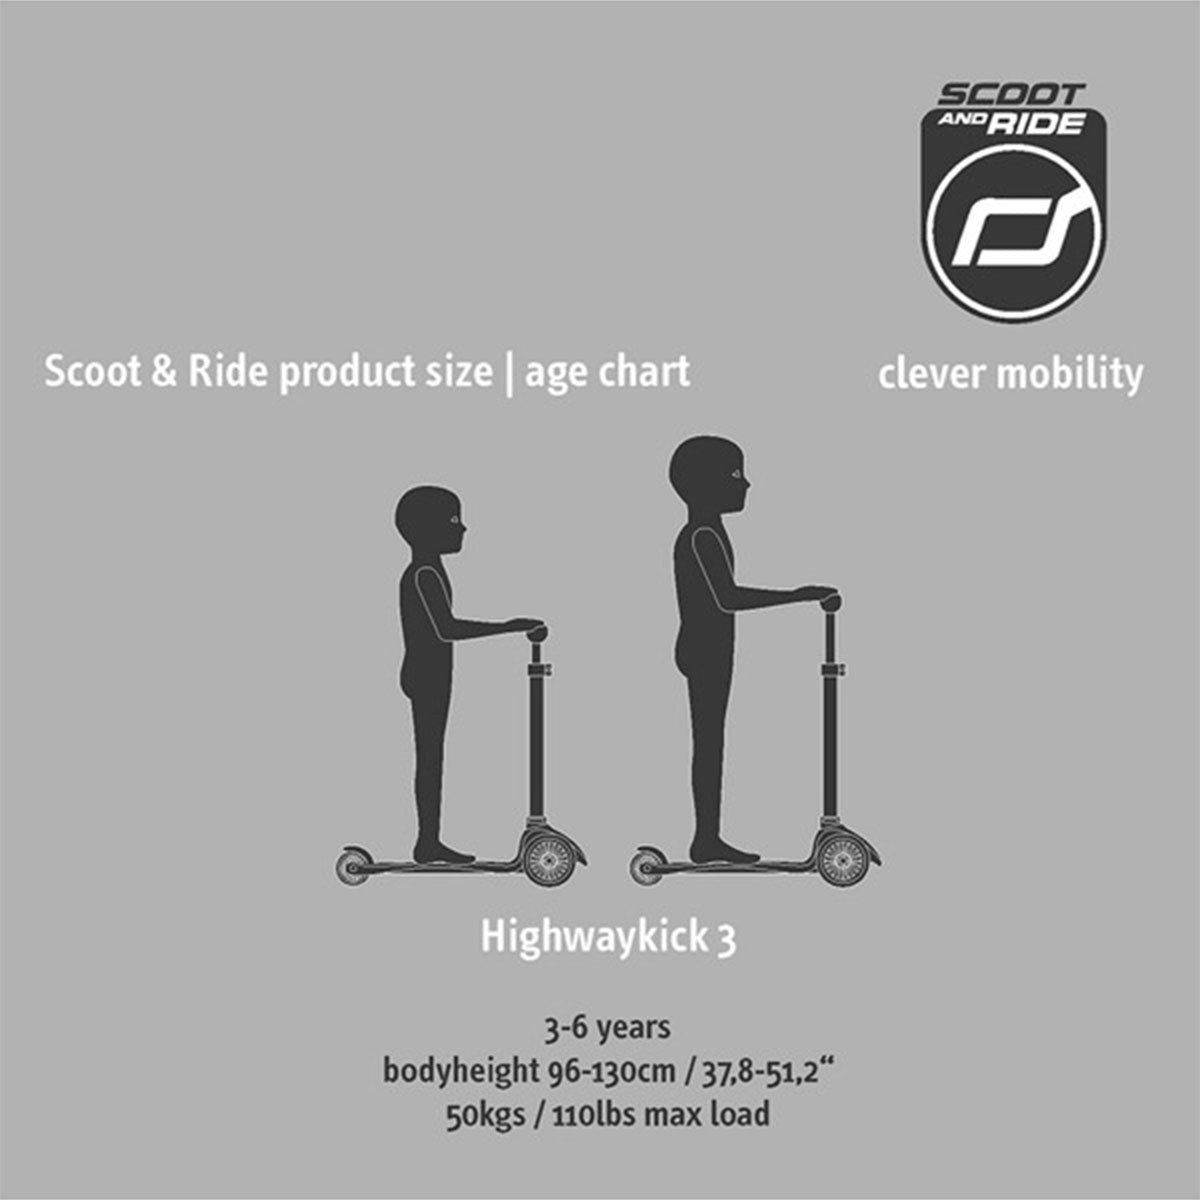 De Scoot and Ride Highwaykick 3 rose is een fijne step voor kinderen vanaf 3 jaar. De Highwaykick is goed voor de ontwikkeling van de fijne motoriek, het evenwichtsgevoel en het zelfvertrouwen van kinderen. VanZus.